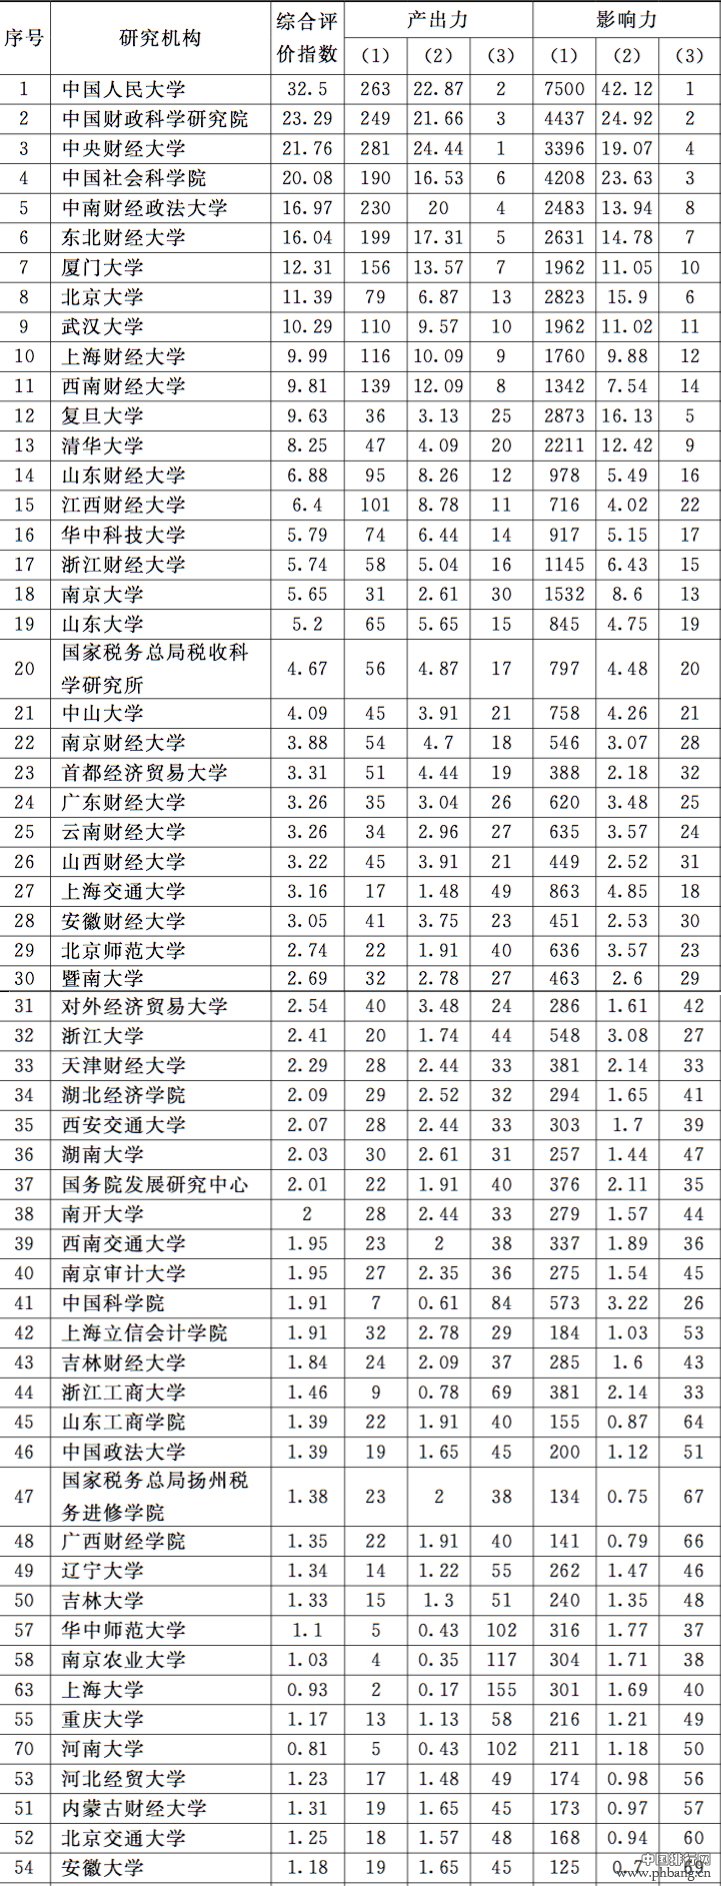 2016中国人民大学财政学研究能力排名全国第一